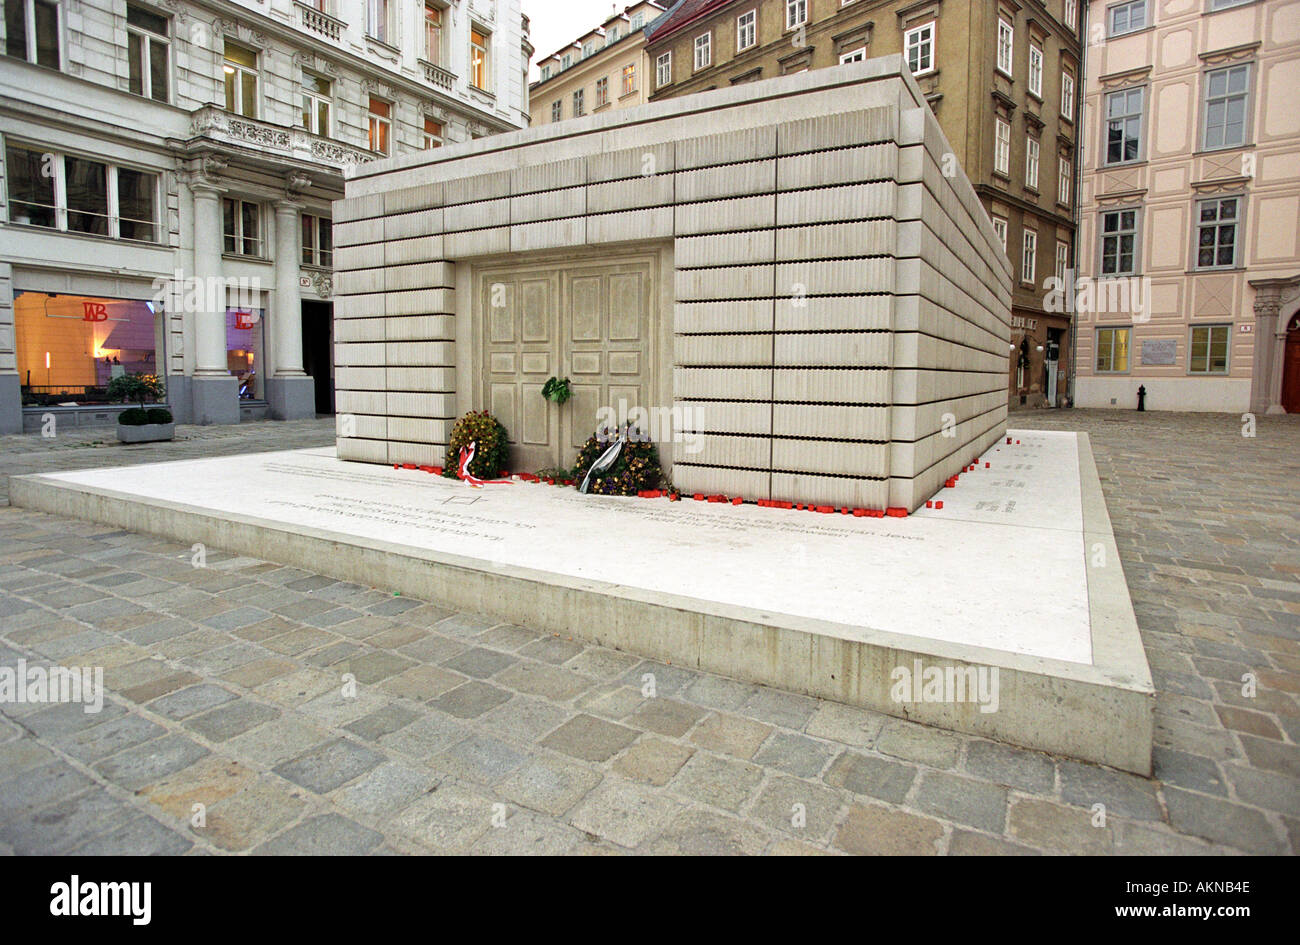 Le monument commémoratif de guerre juive par Rachel Whiteread à Vienne Autriche Banque D'Images